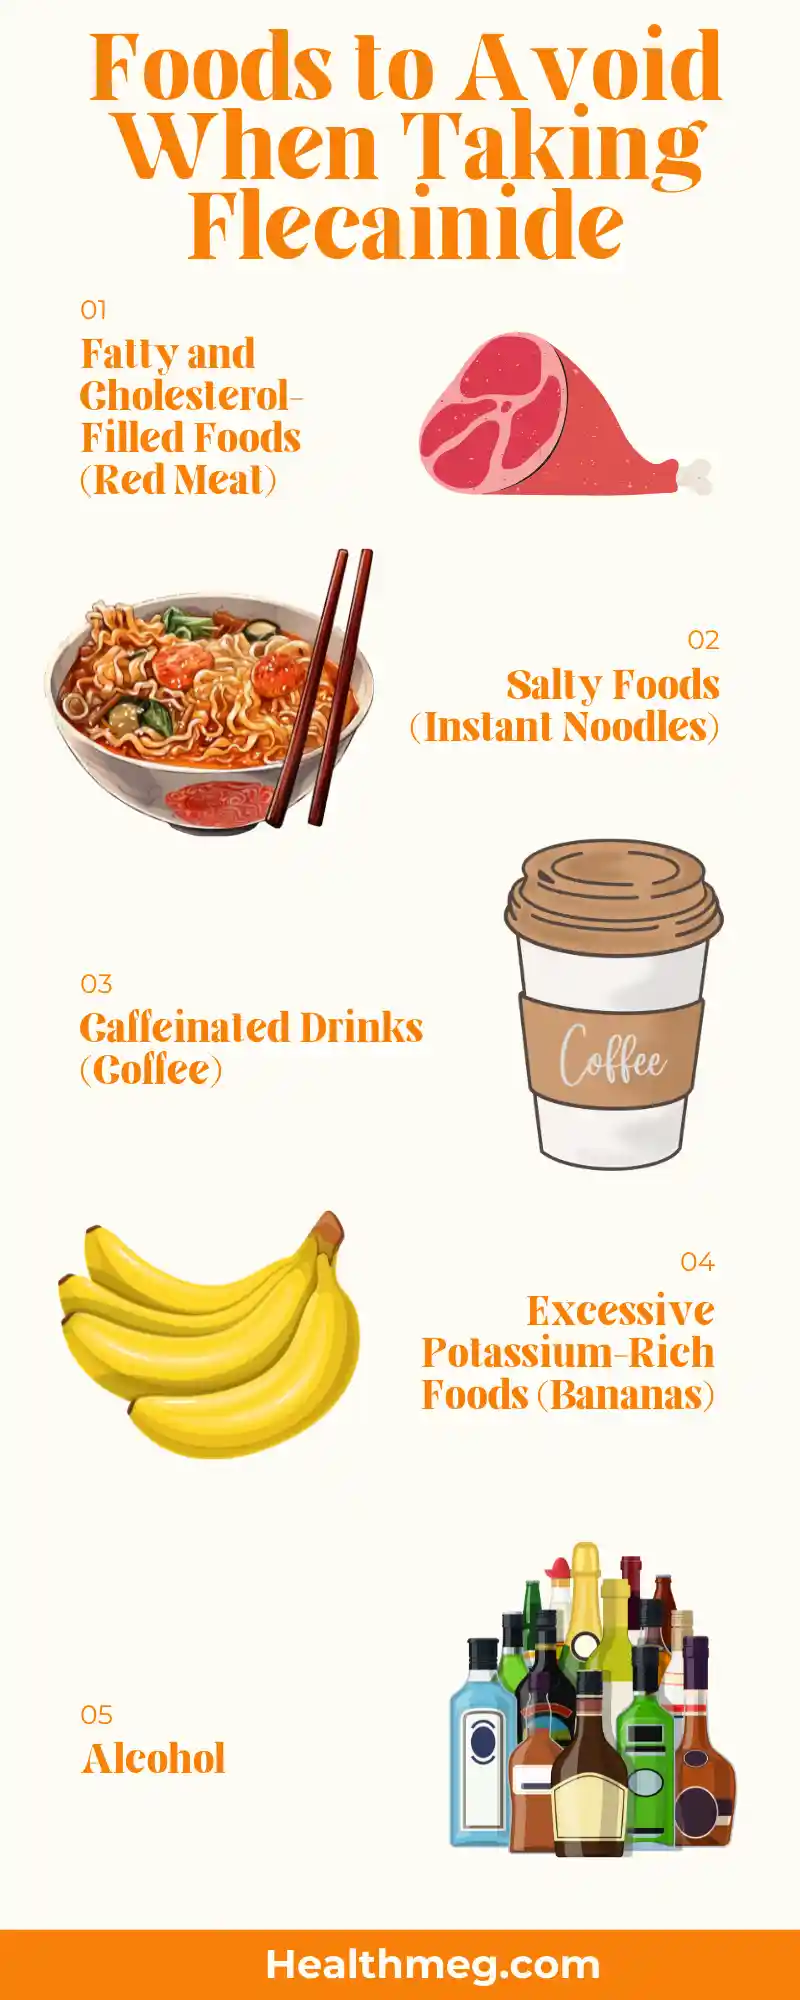 5 Foods to Avoid When Taking Flecainide